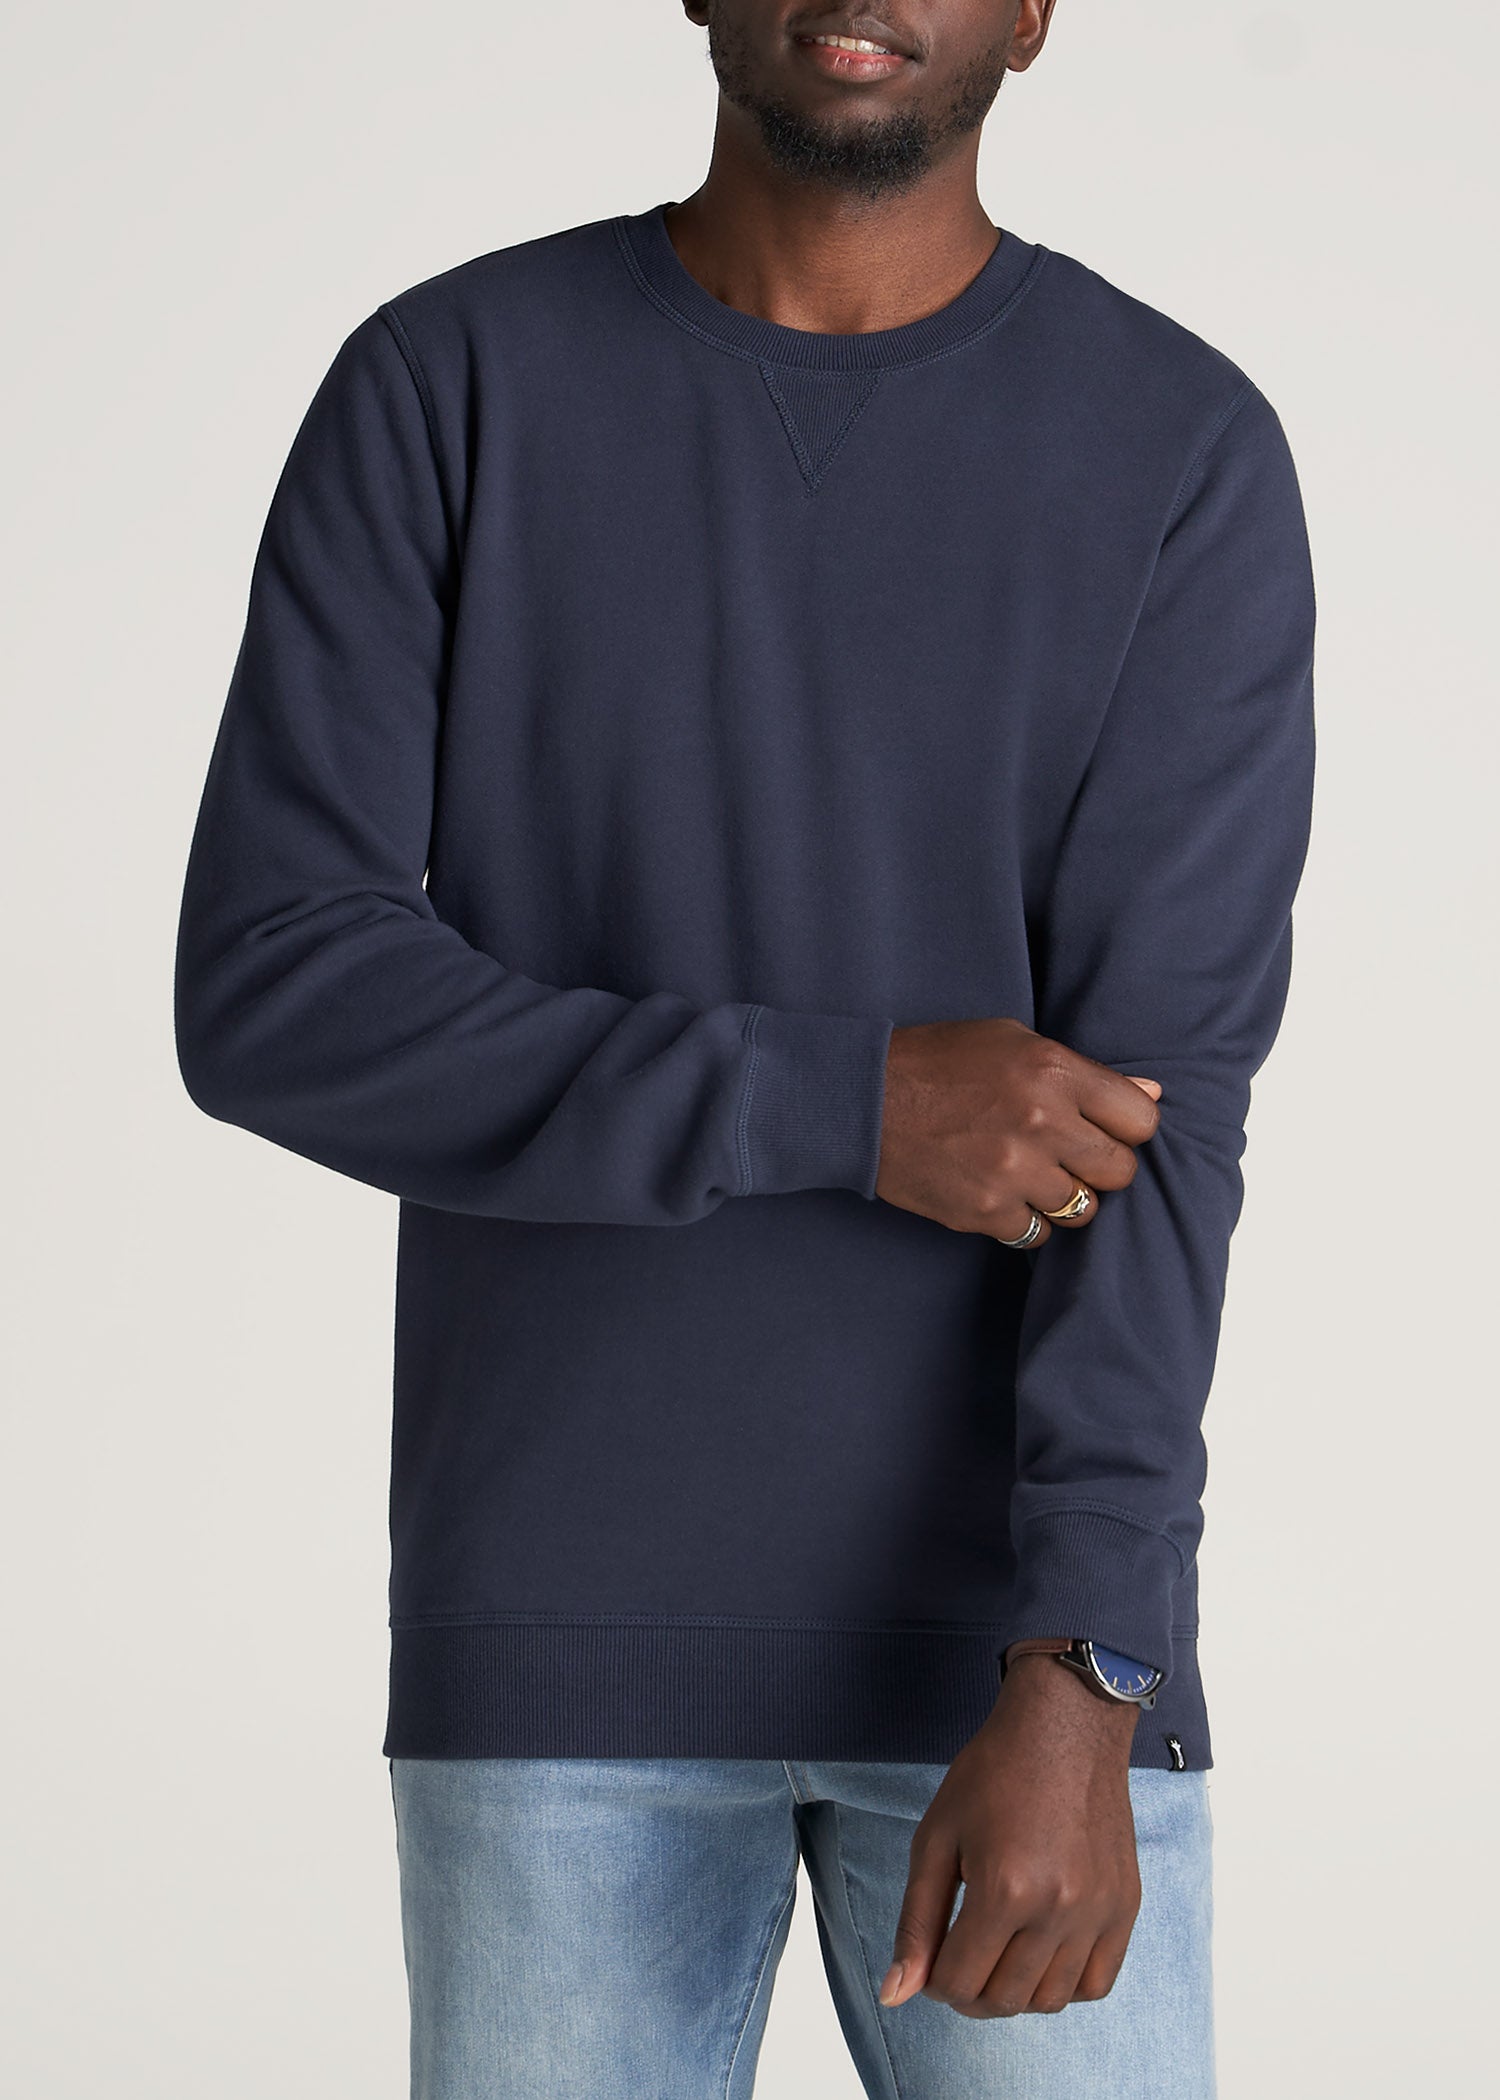 Wearever Fleece Crewneck Tall Men's Sweatshirt in Navy